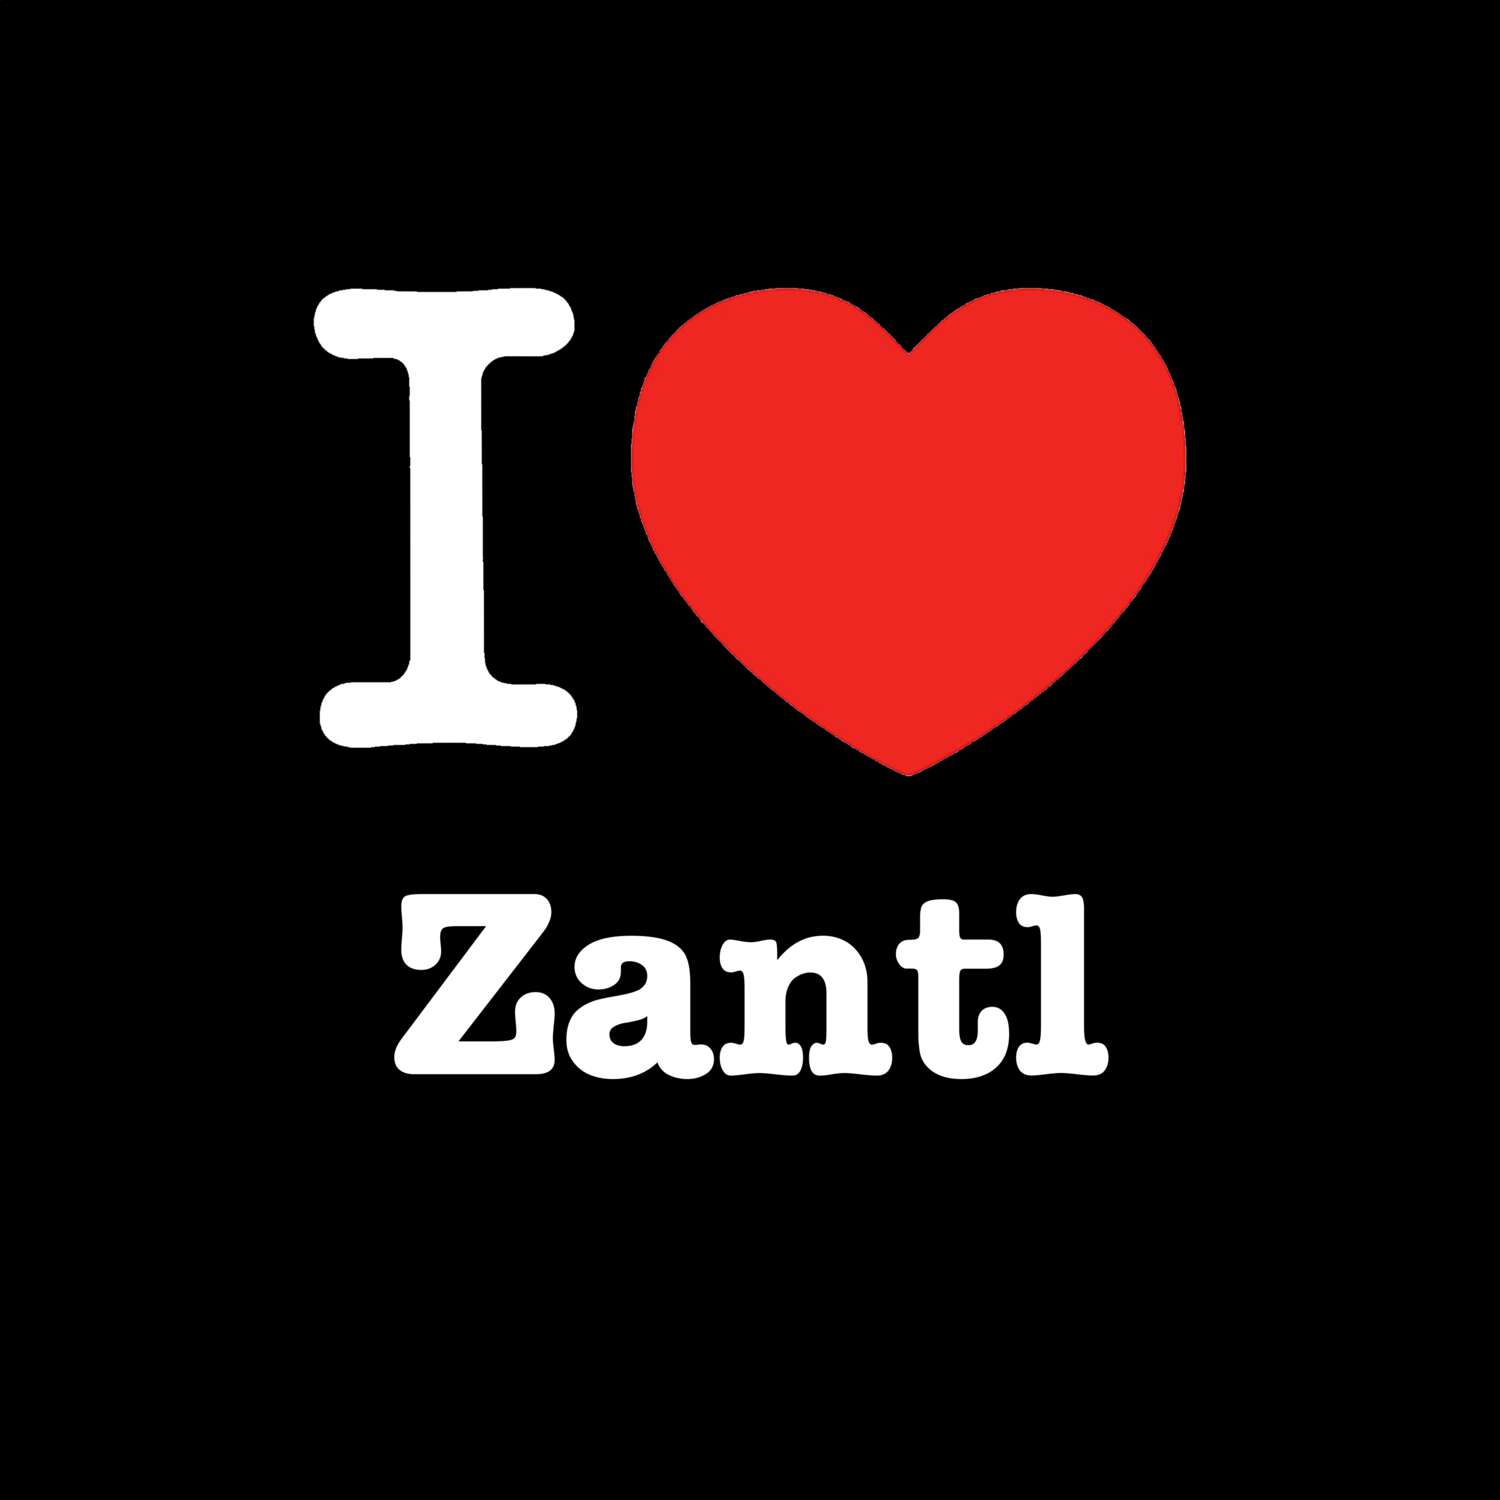 Zantl T-Shirt »I love«